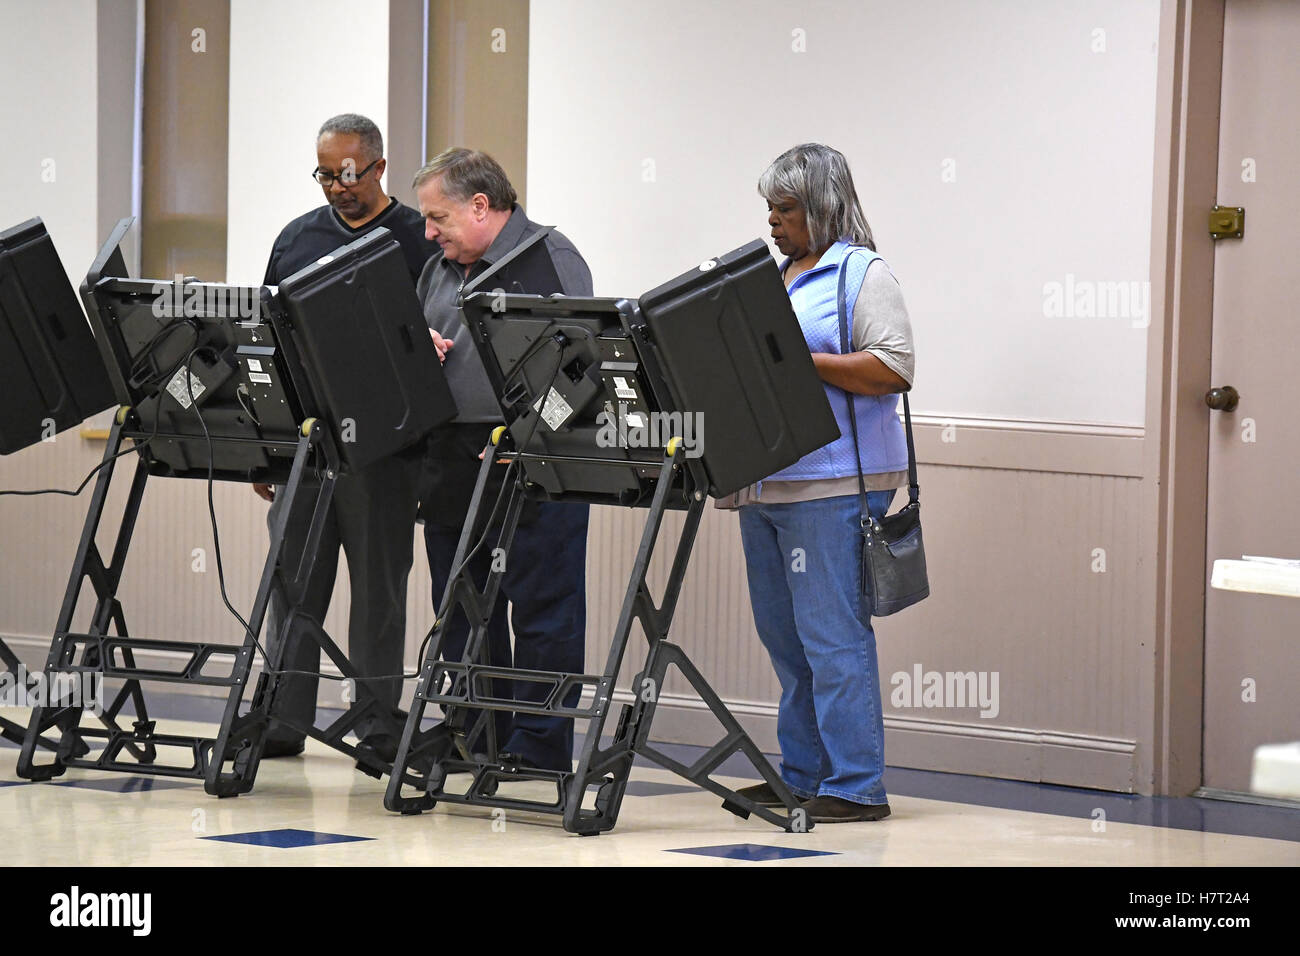 St Louis, Missouri, USA. 8 novembre, 2016. Les électeurs viennent à leurs bureaux de vote d'exercer leur droit de vote lors des élections présidentielles à Saint Louis, Missouri Crédit : Gino's Premium Images/Alamy Live News Banque D'Images